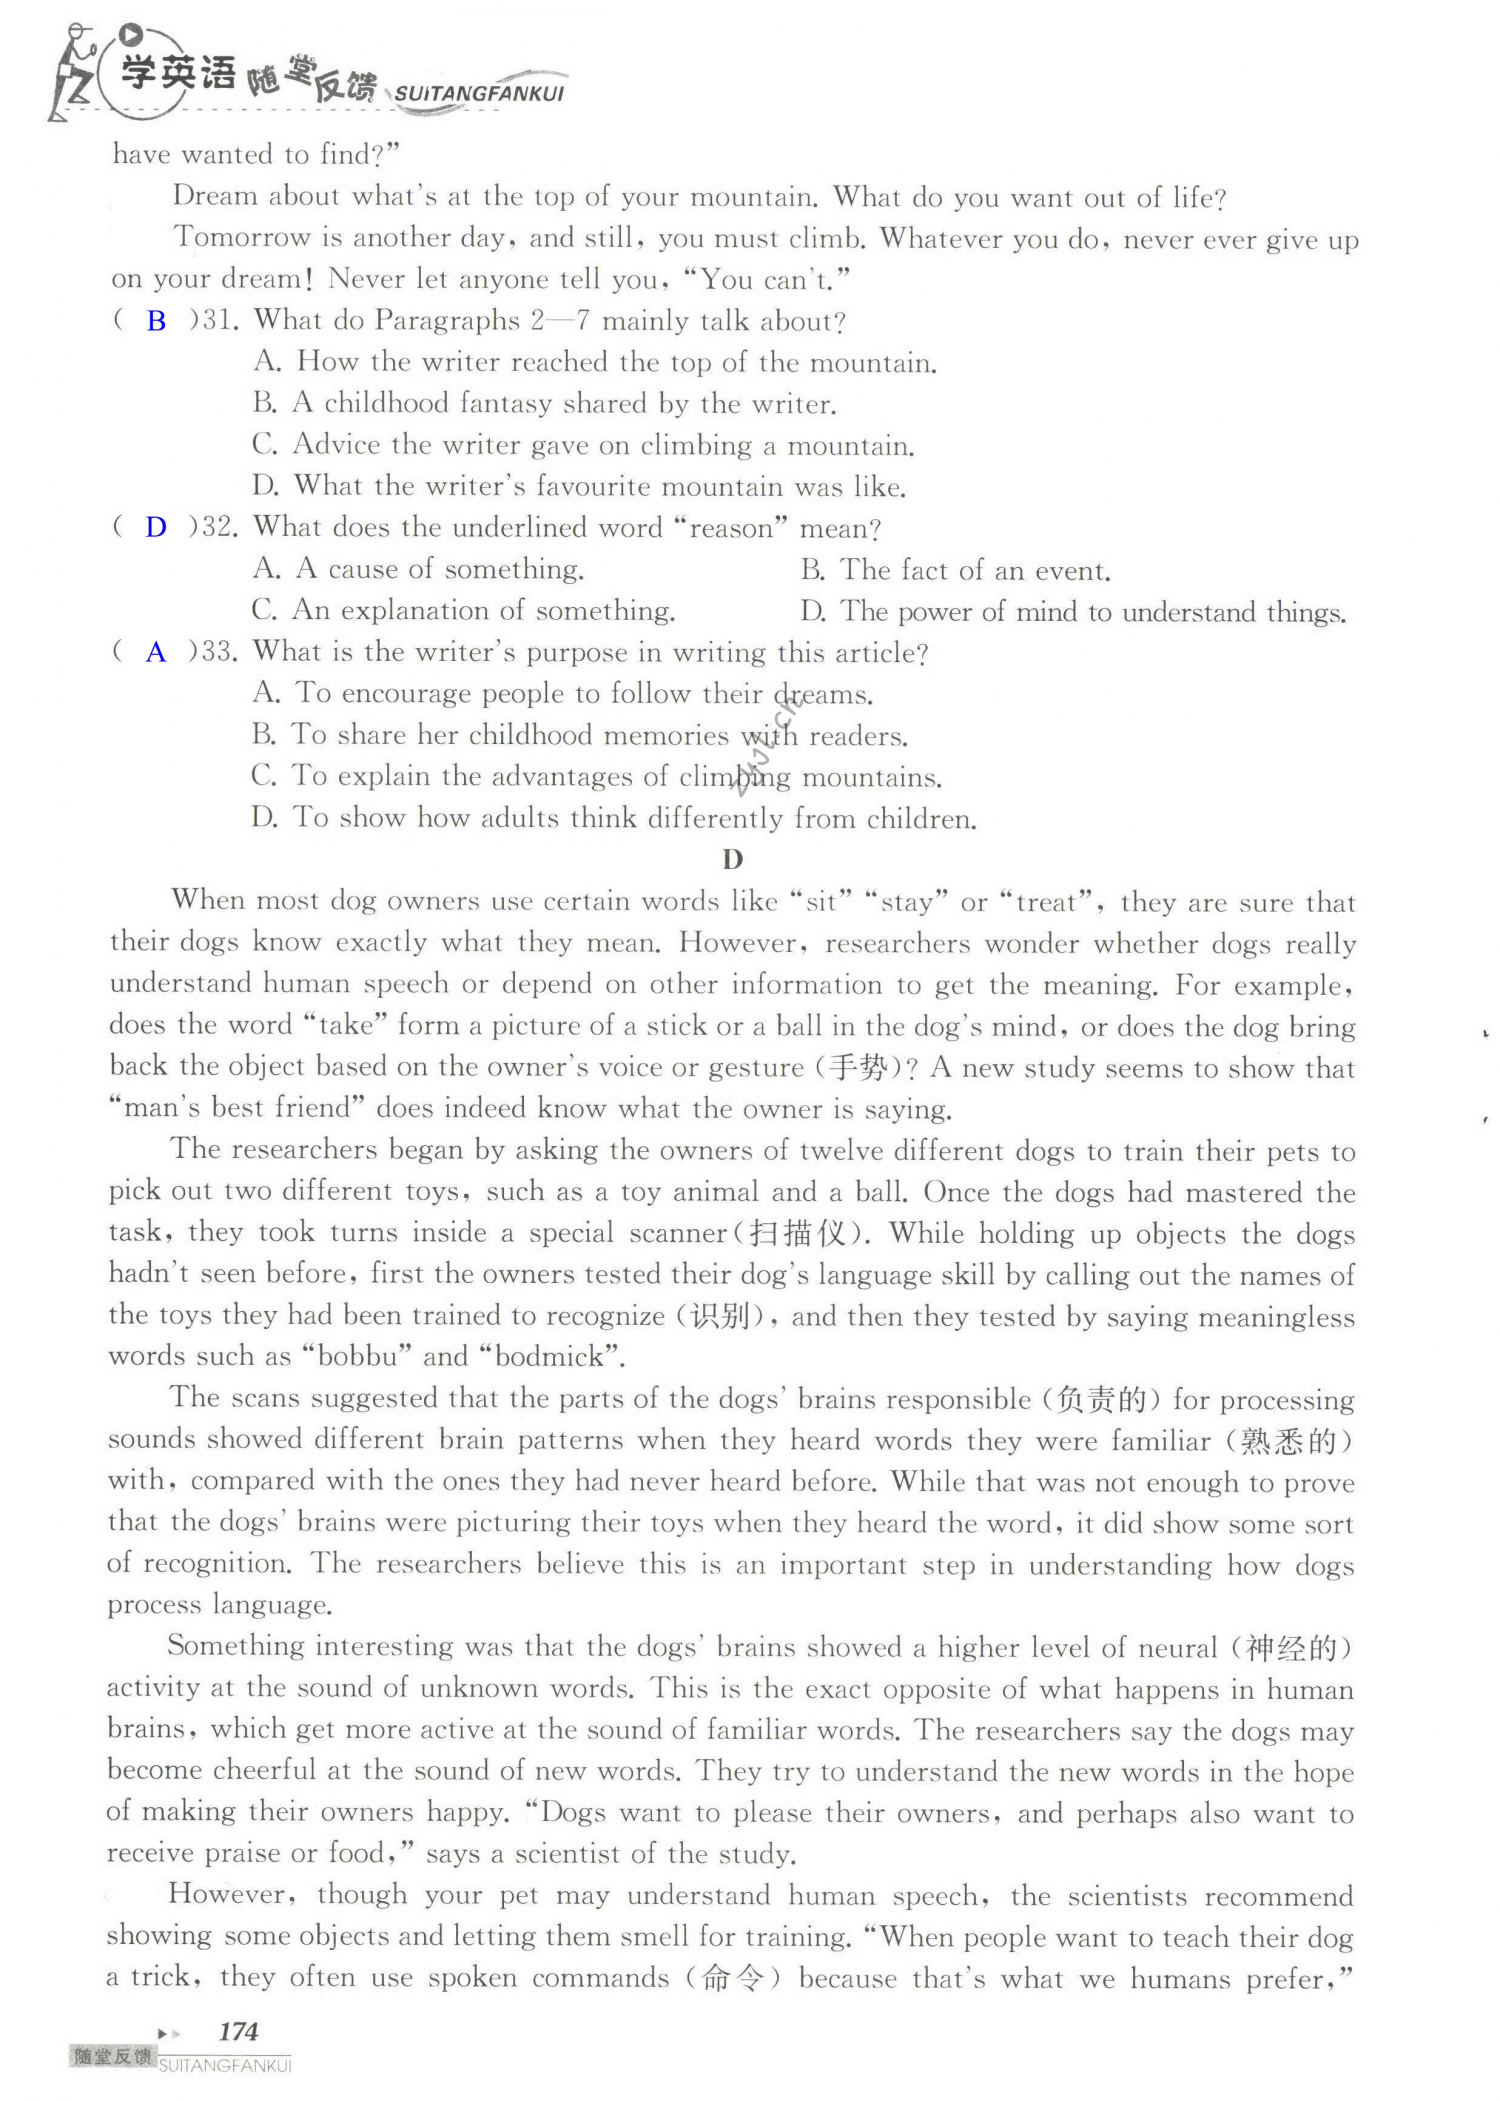 单元综合测试卷 Test for Units 3-4 of 9B - 第174页